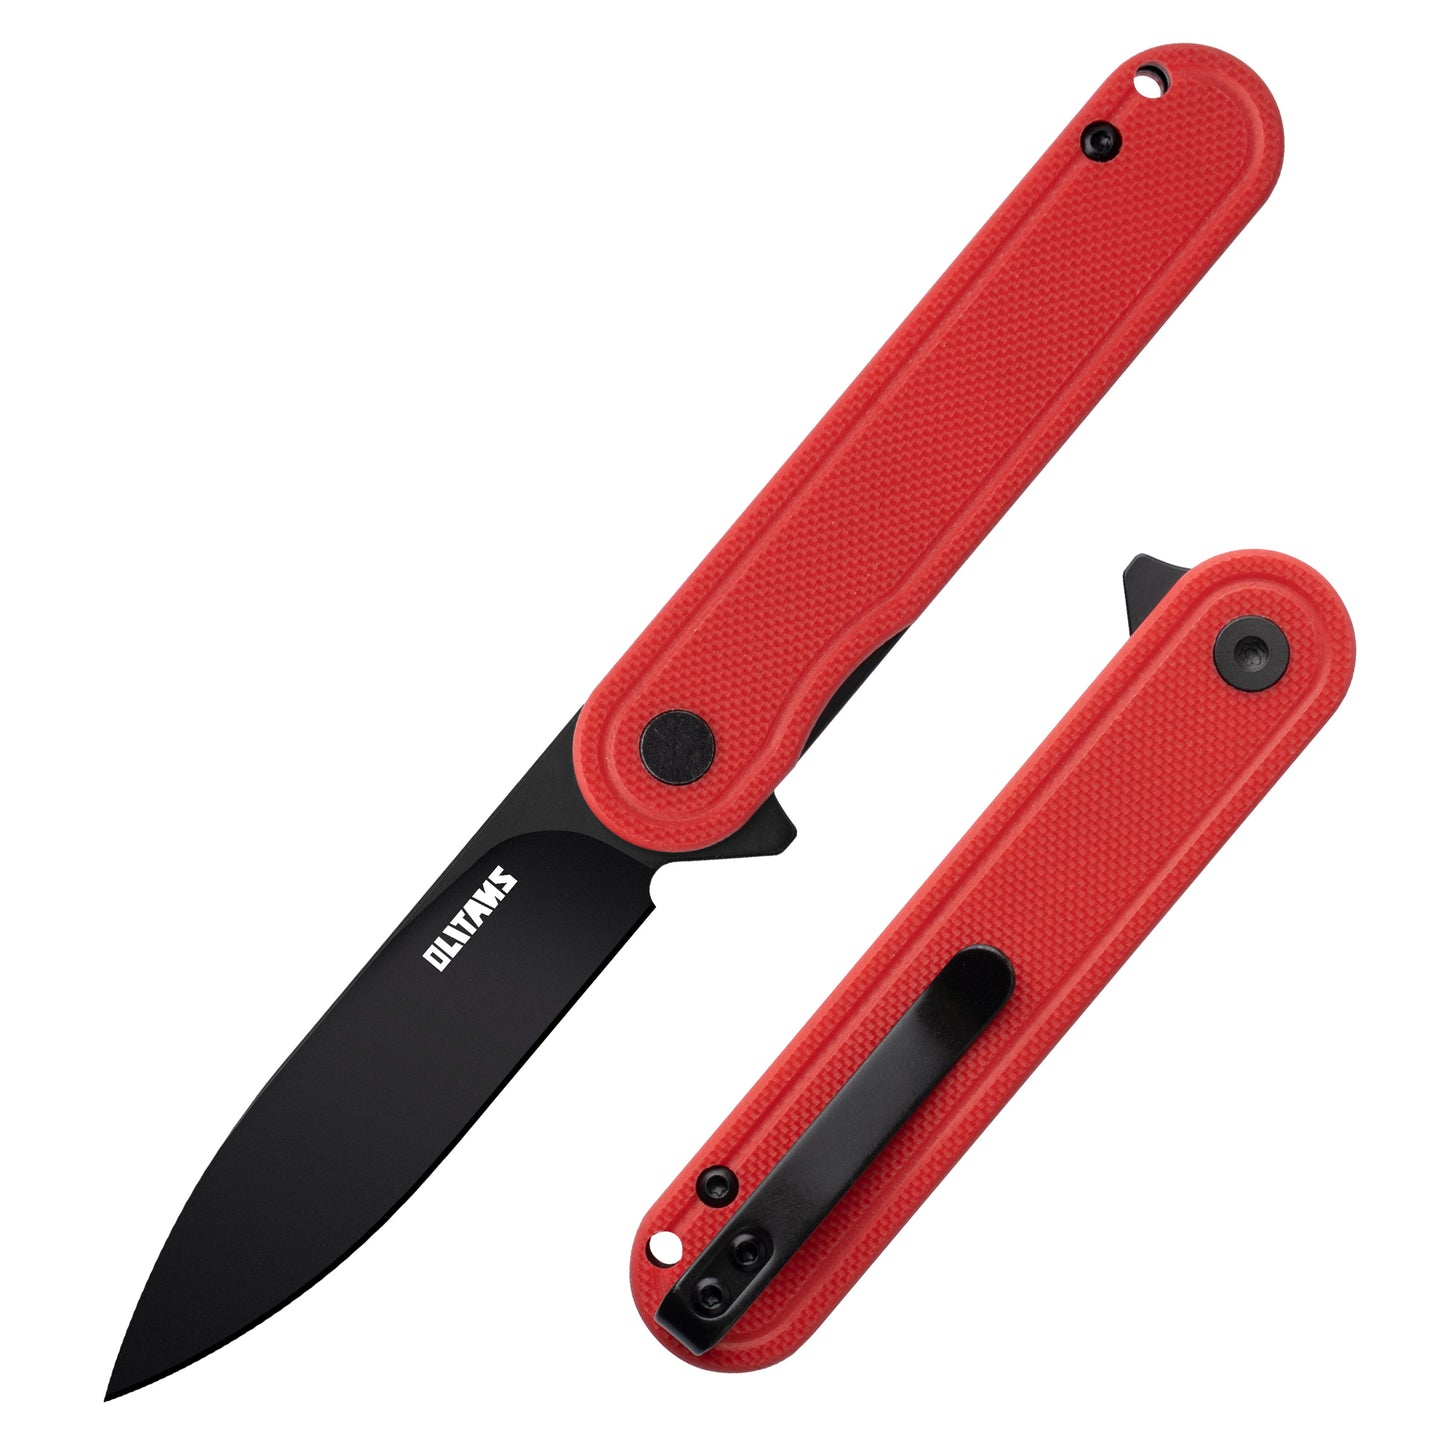 Карманный нож OLITANS G040, стальное лезвие D2, ручка G10, 2,75 дюйма, маленький нож EDC с карманным зажимом для мужчин и женщин, мини-складной походный нож, 2,1 унции